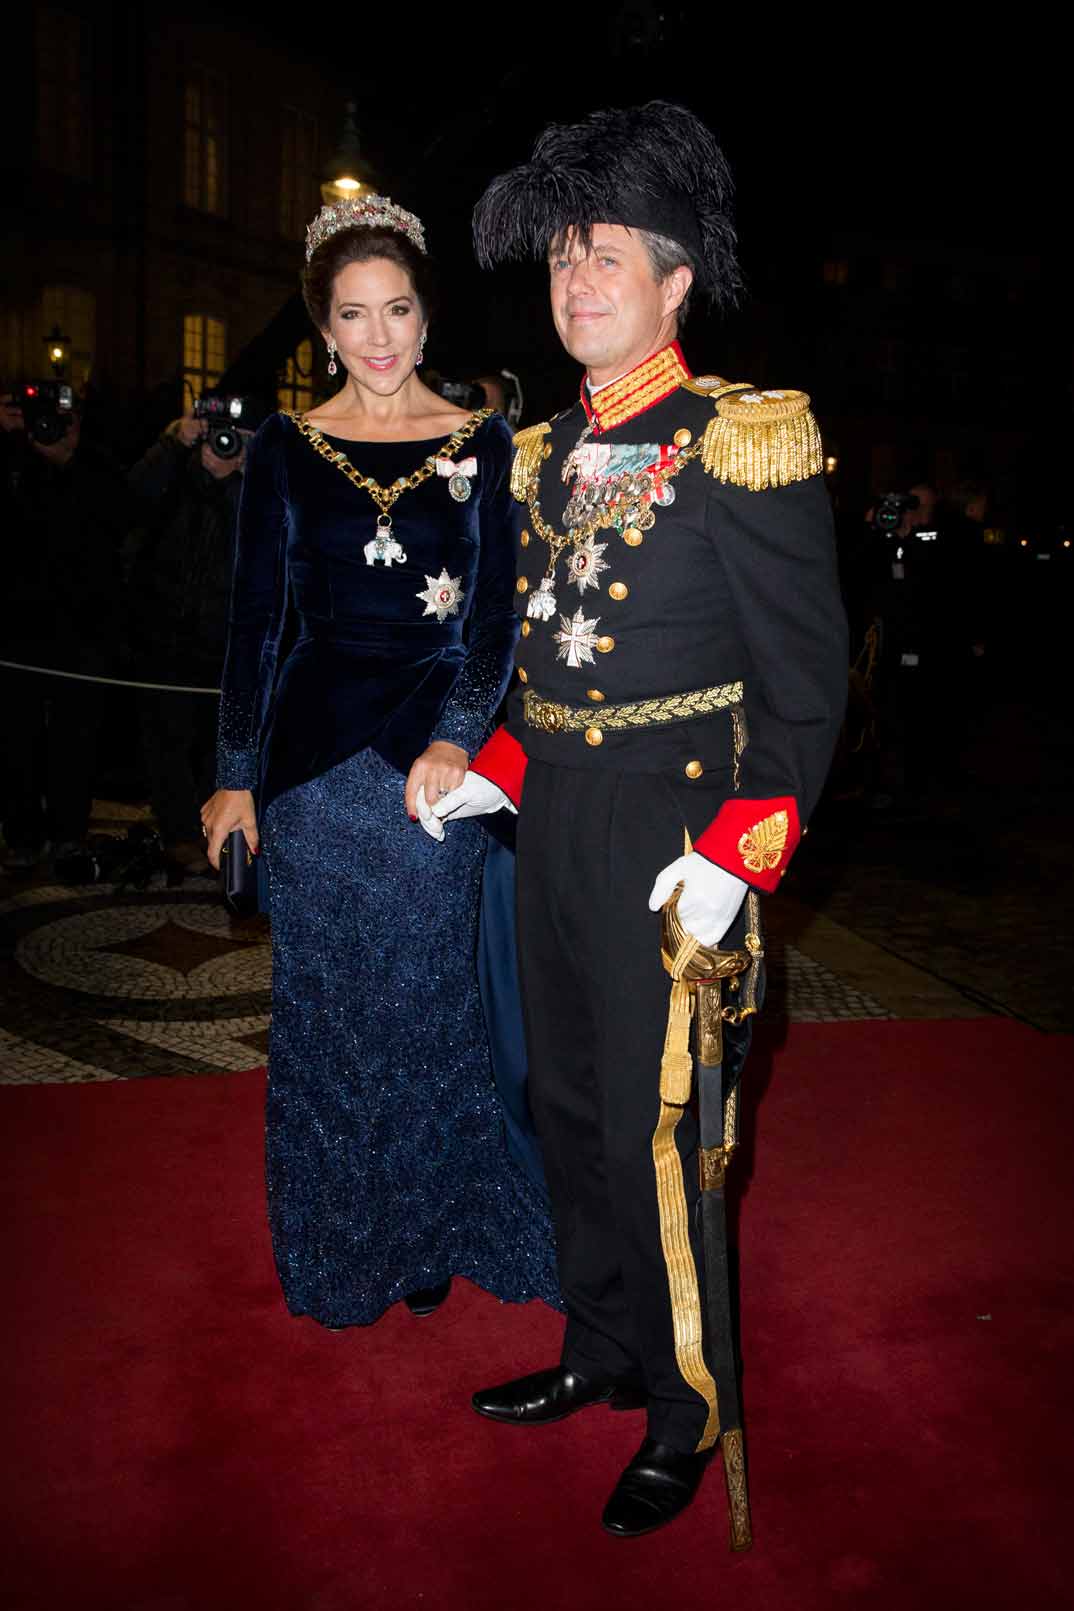 principe-federico-y-princesa-mary-de-dinamarca e la cena de gala de ano nuevo